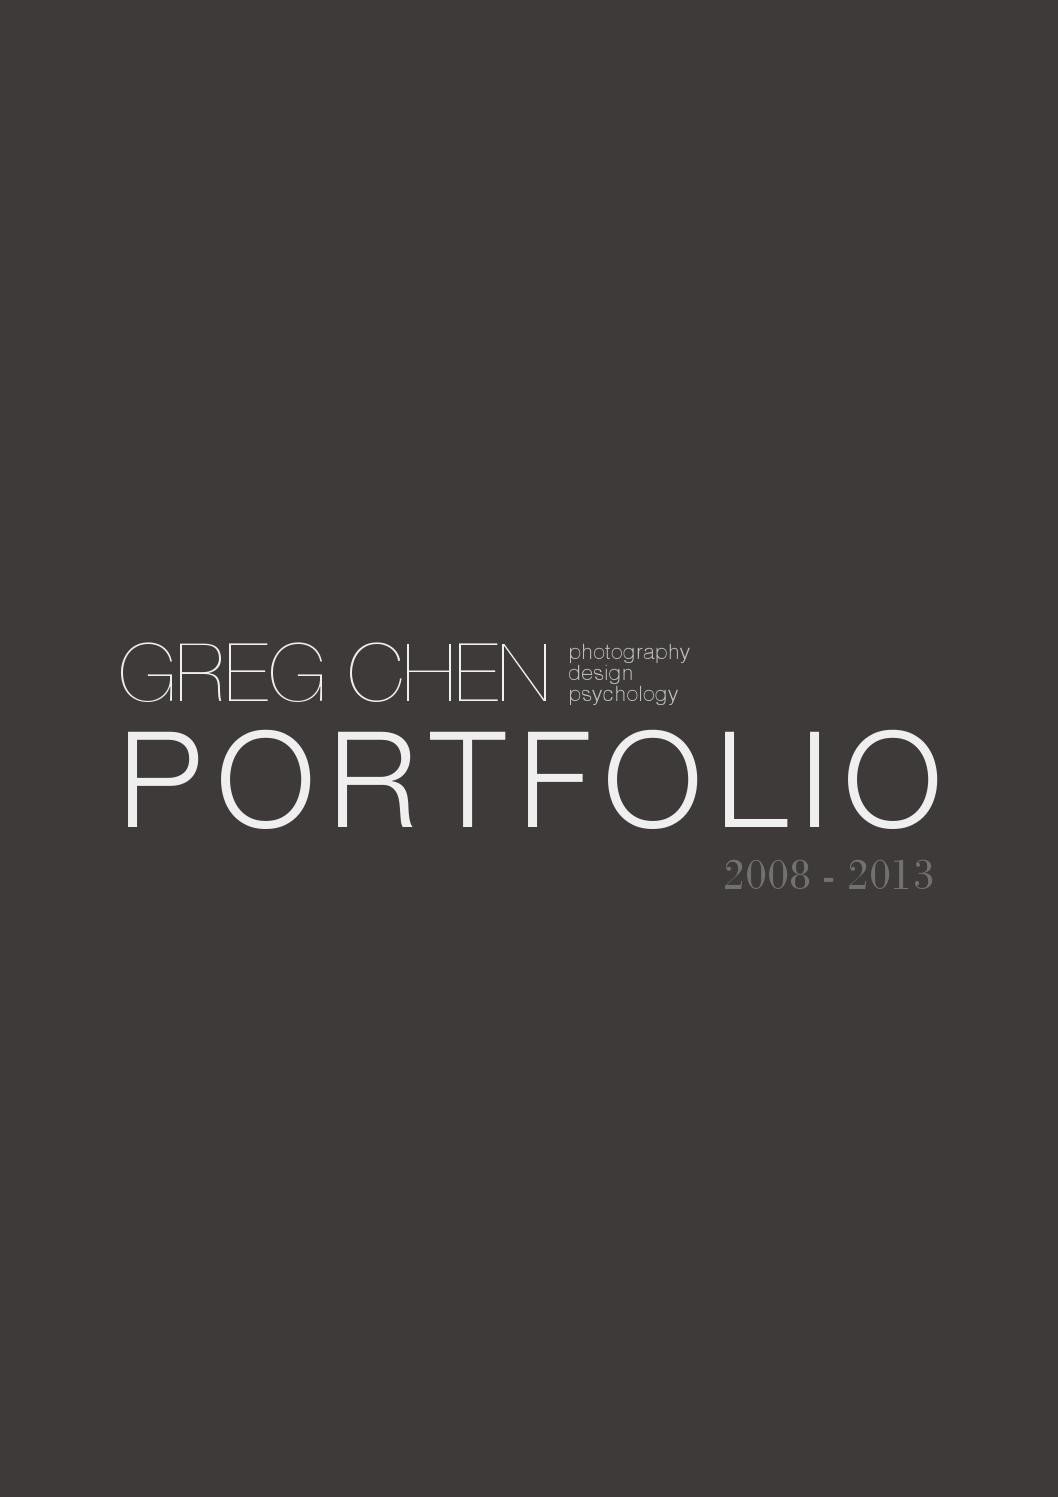 Greg chen design portfolio 2013 by Greg Chen Issuu